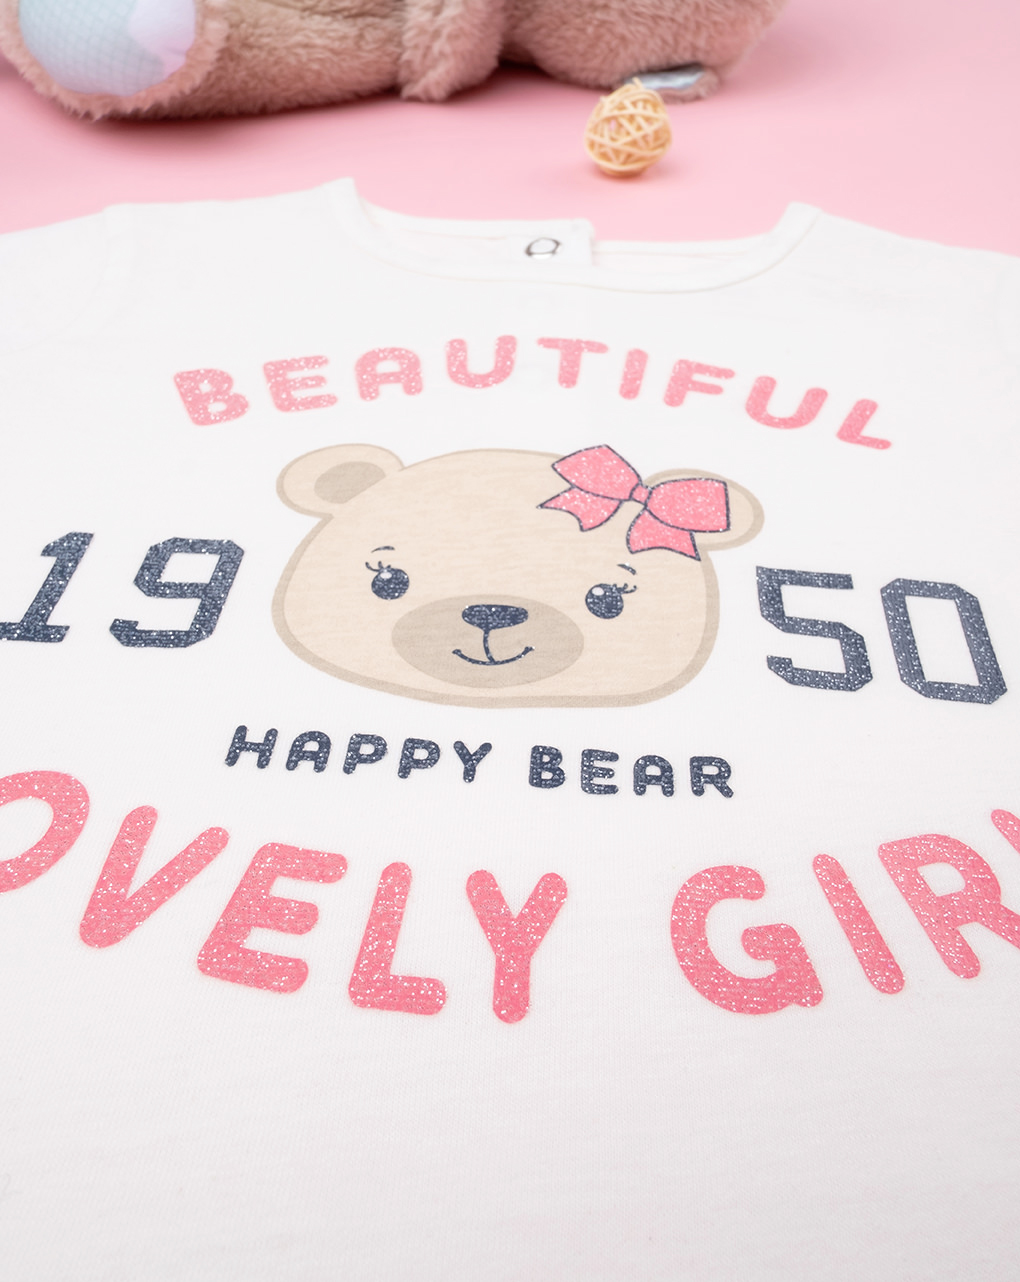 Camiseta niña nata "lovely girl" (chica encantadora) - Prénatal